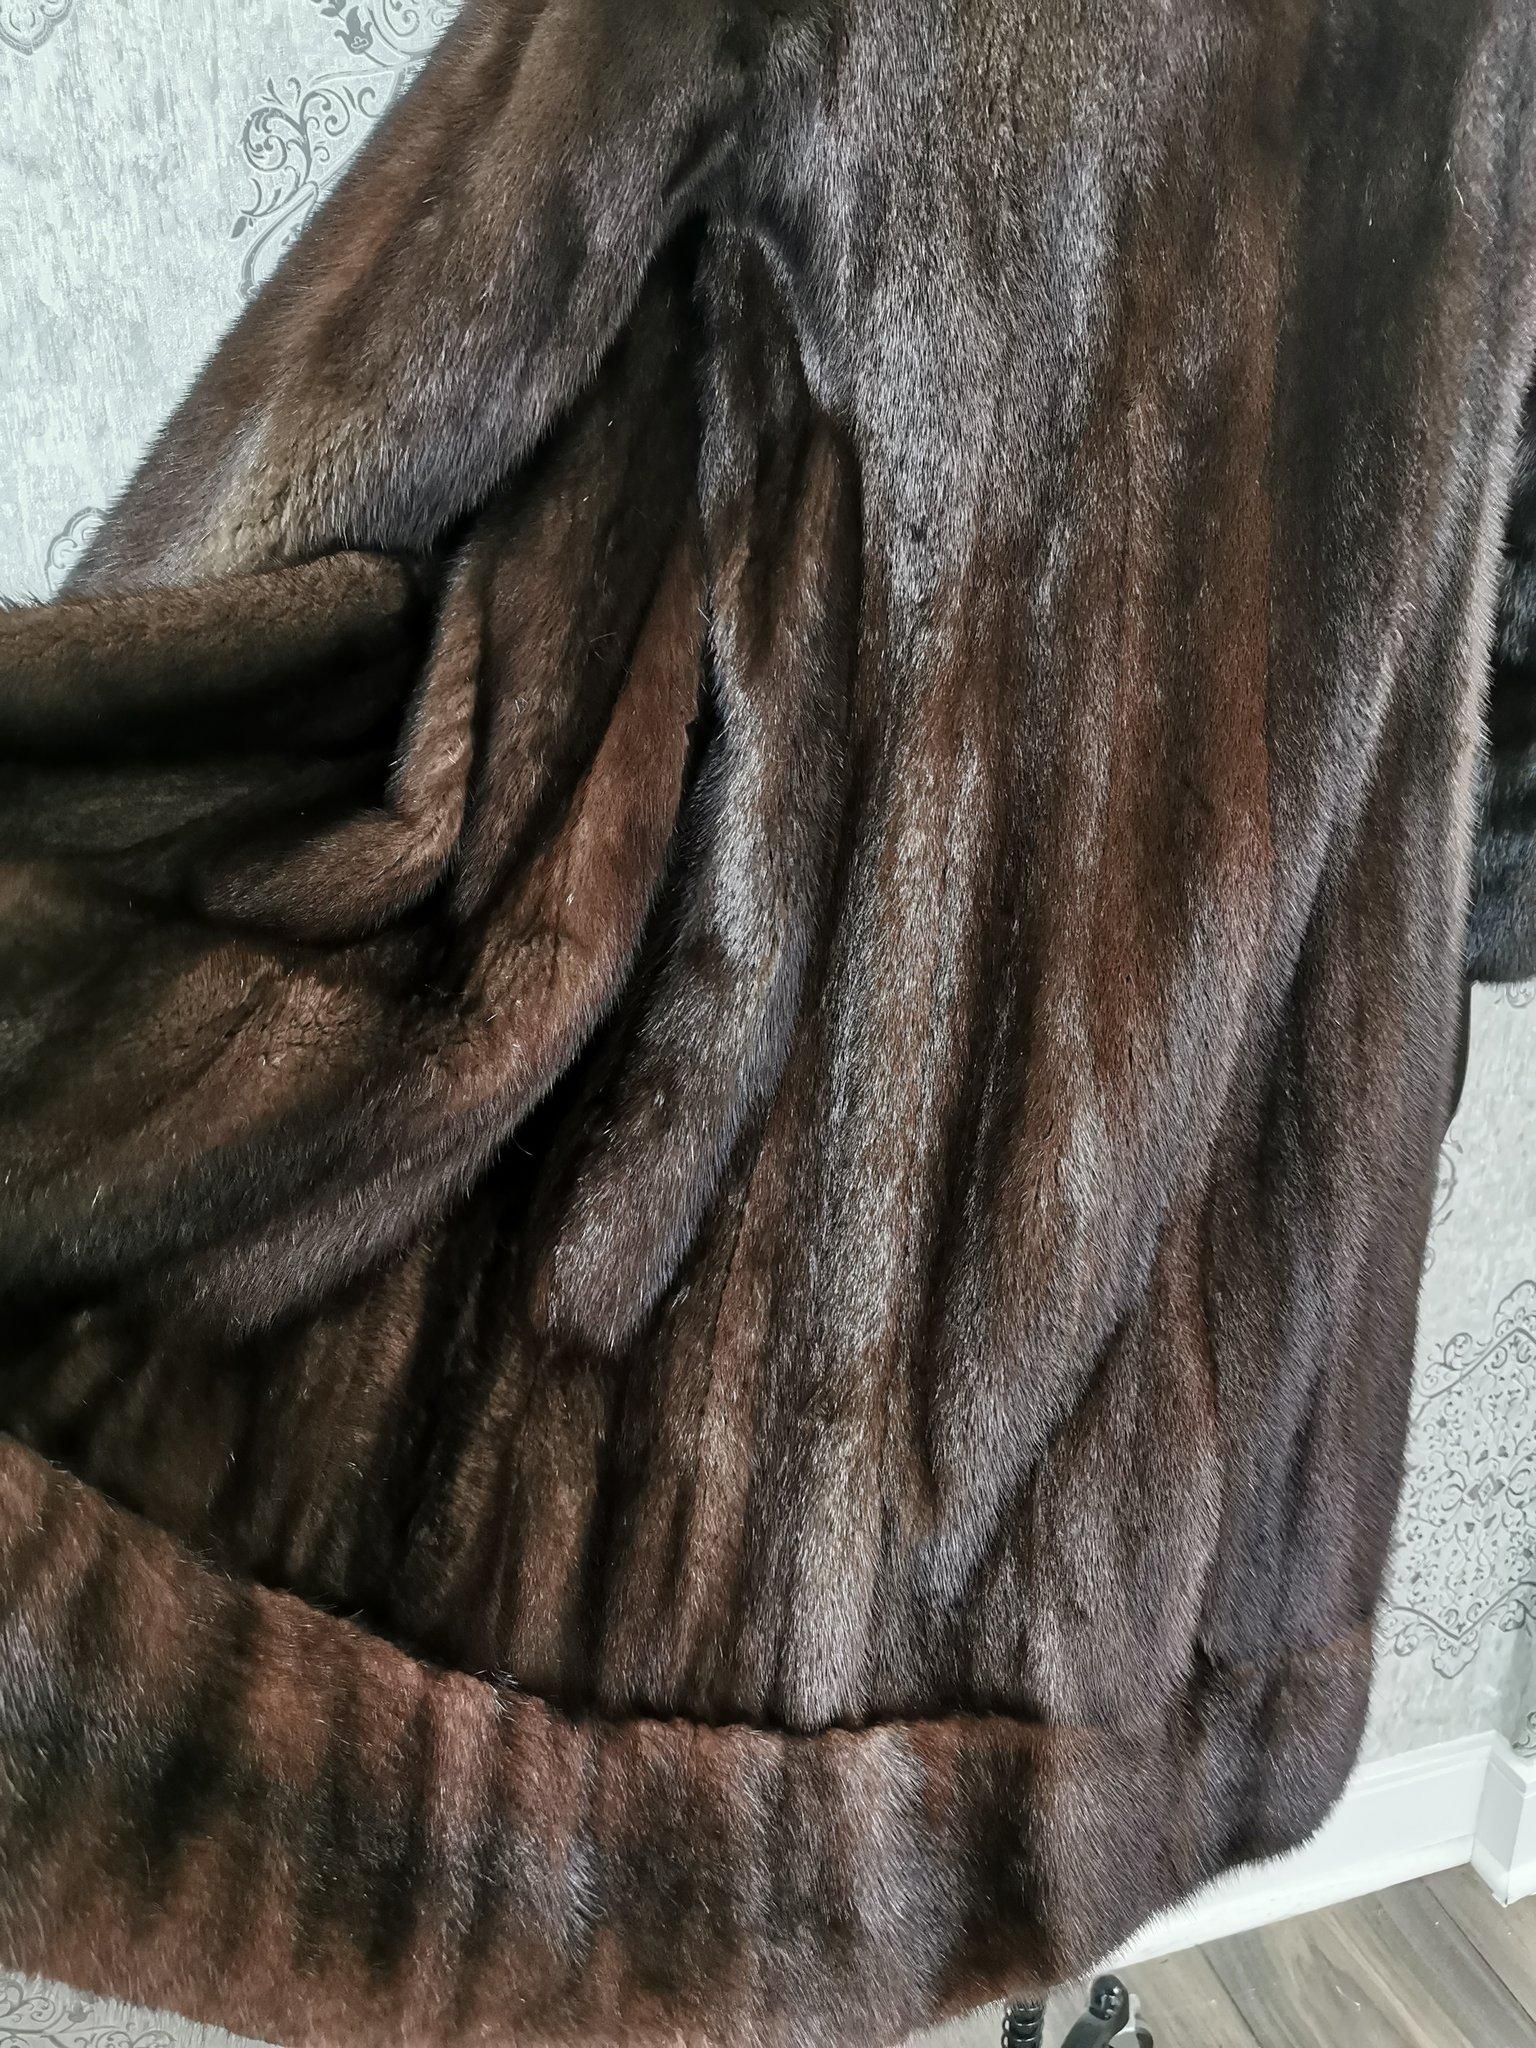 Christian dior / Holt renfrew mink fur coat size 6 For Sale 1